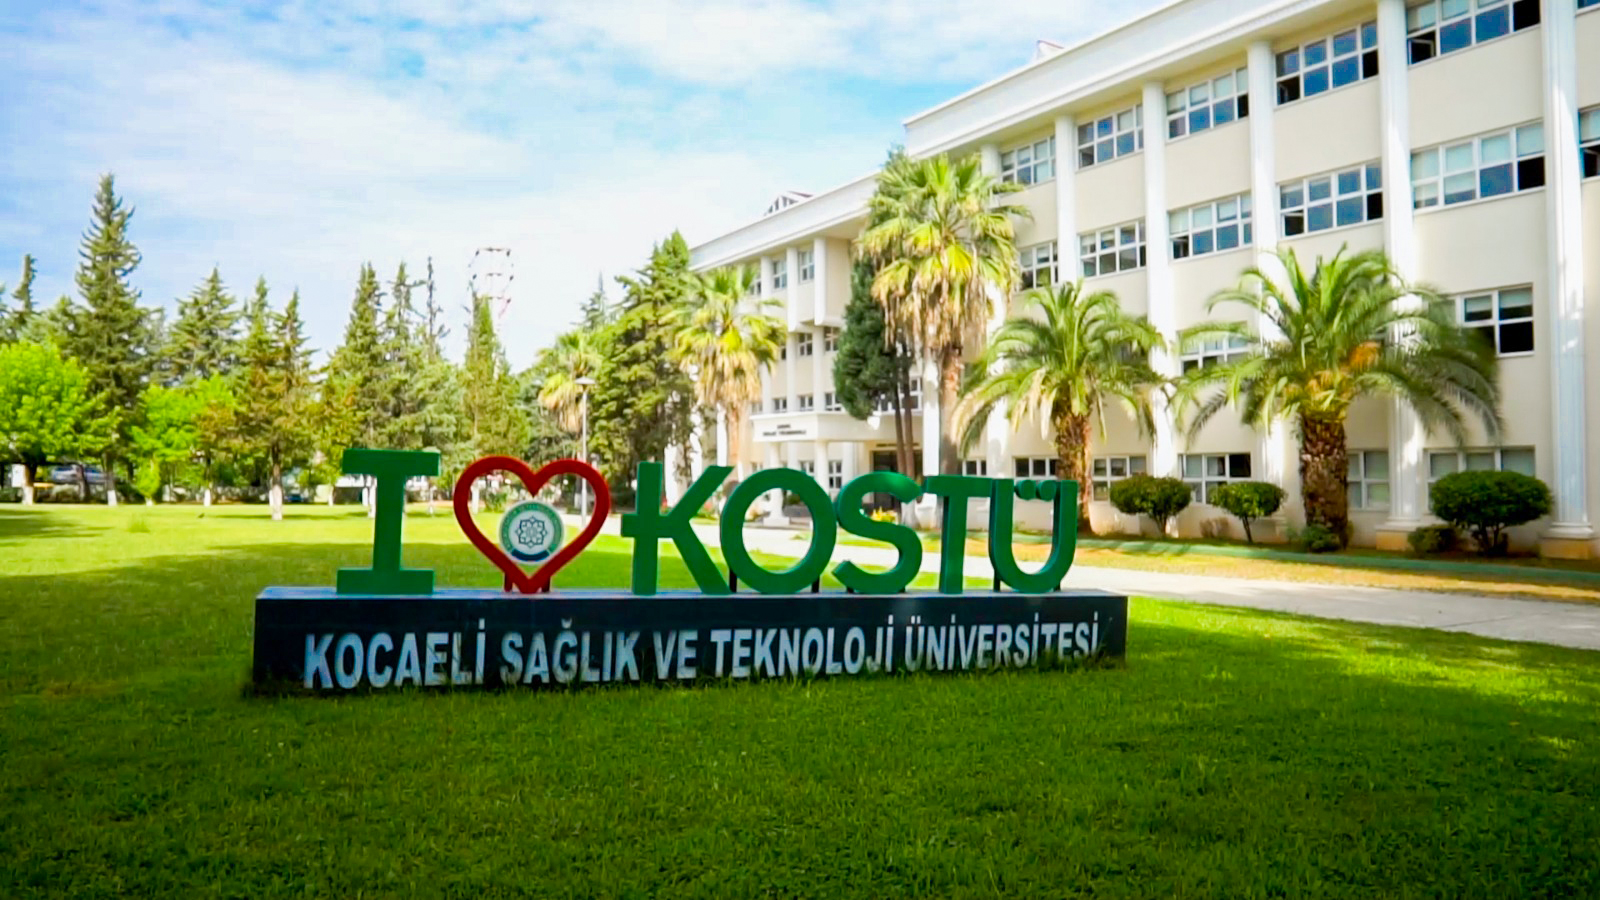 kocaelitek universitesi find and study 1 2 - Université de santé et de technologie de Kocaeli